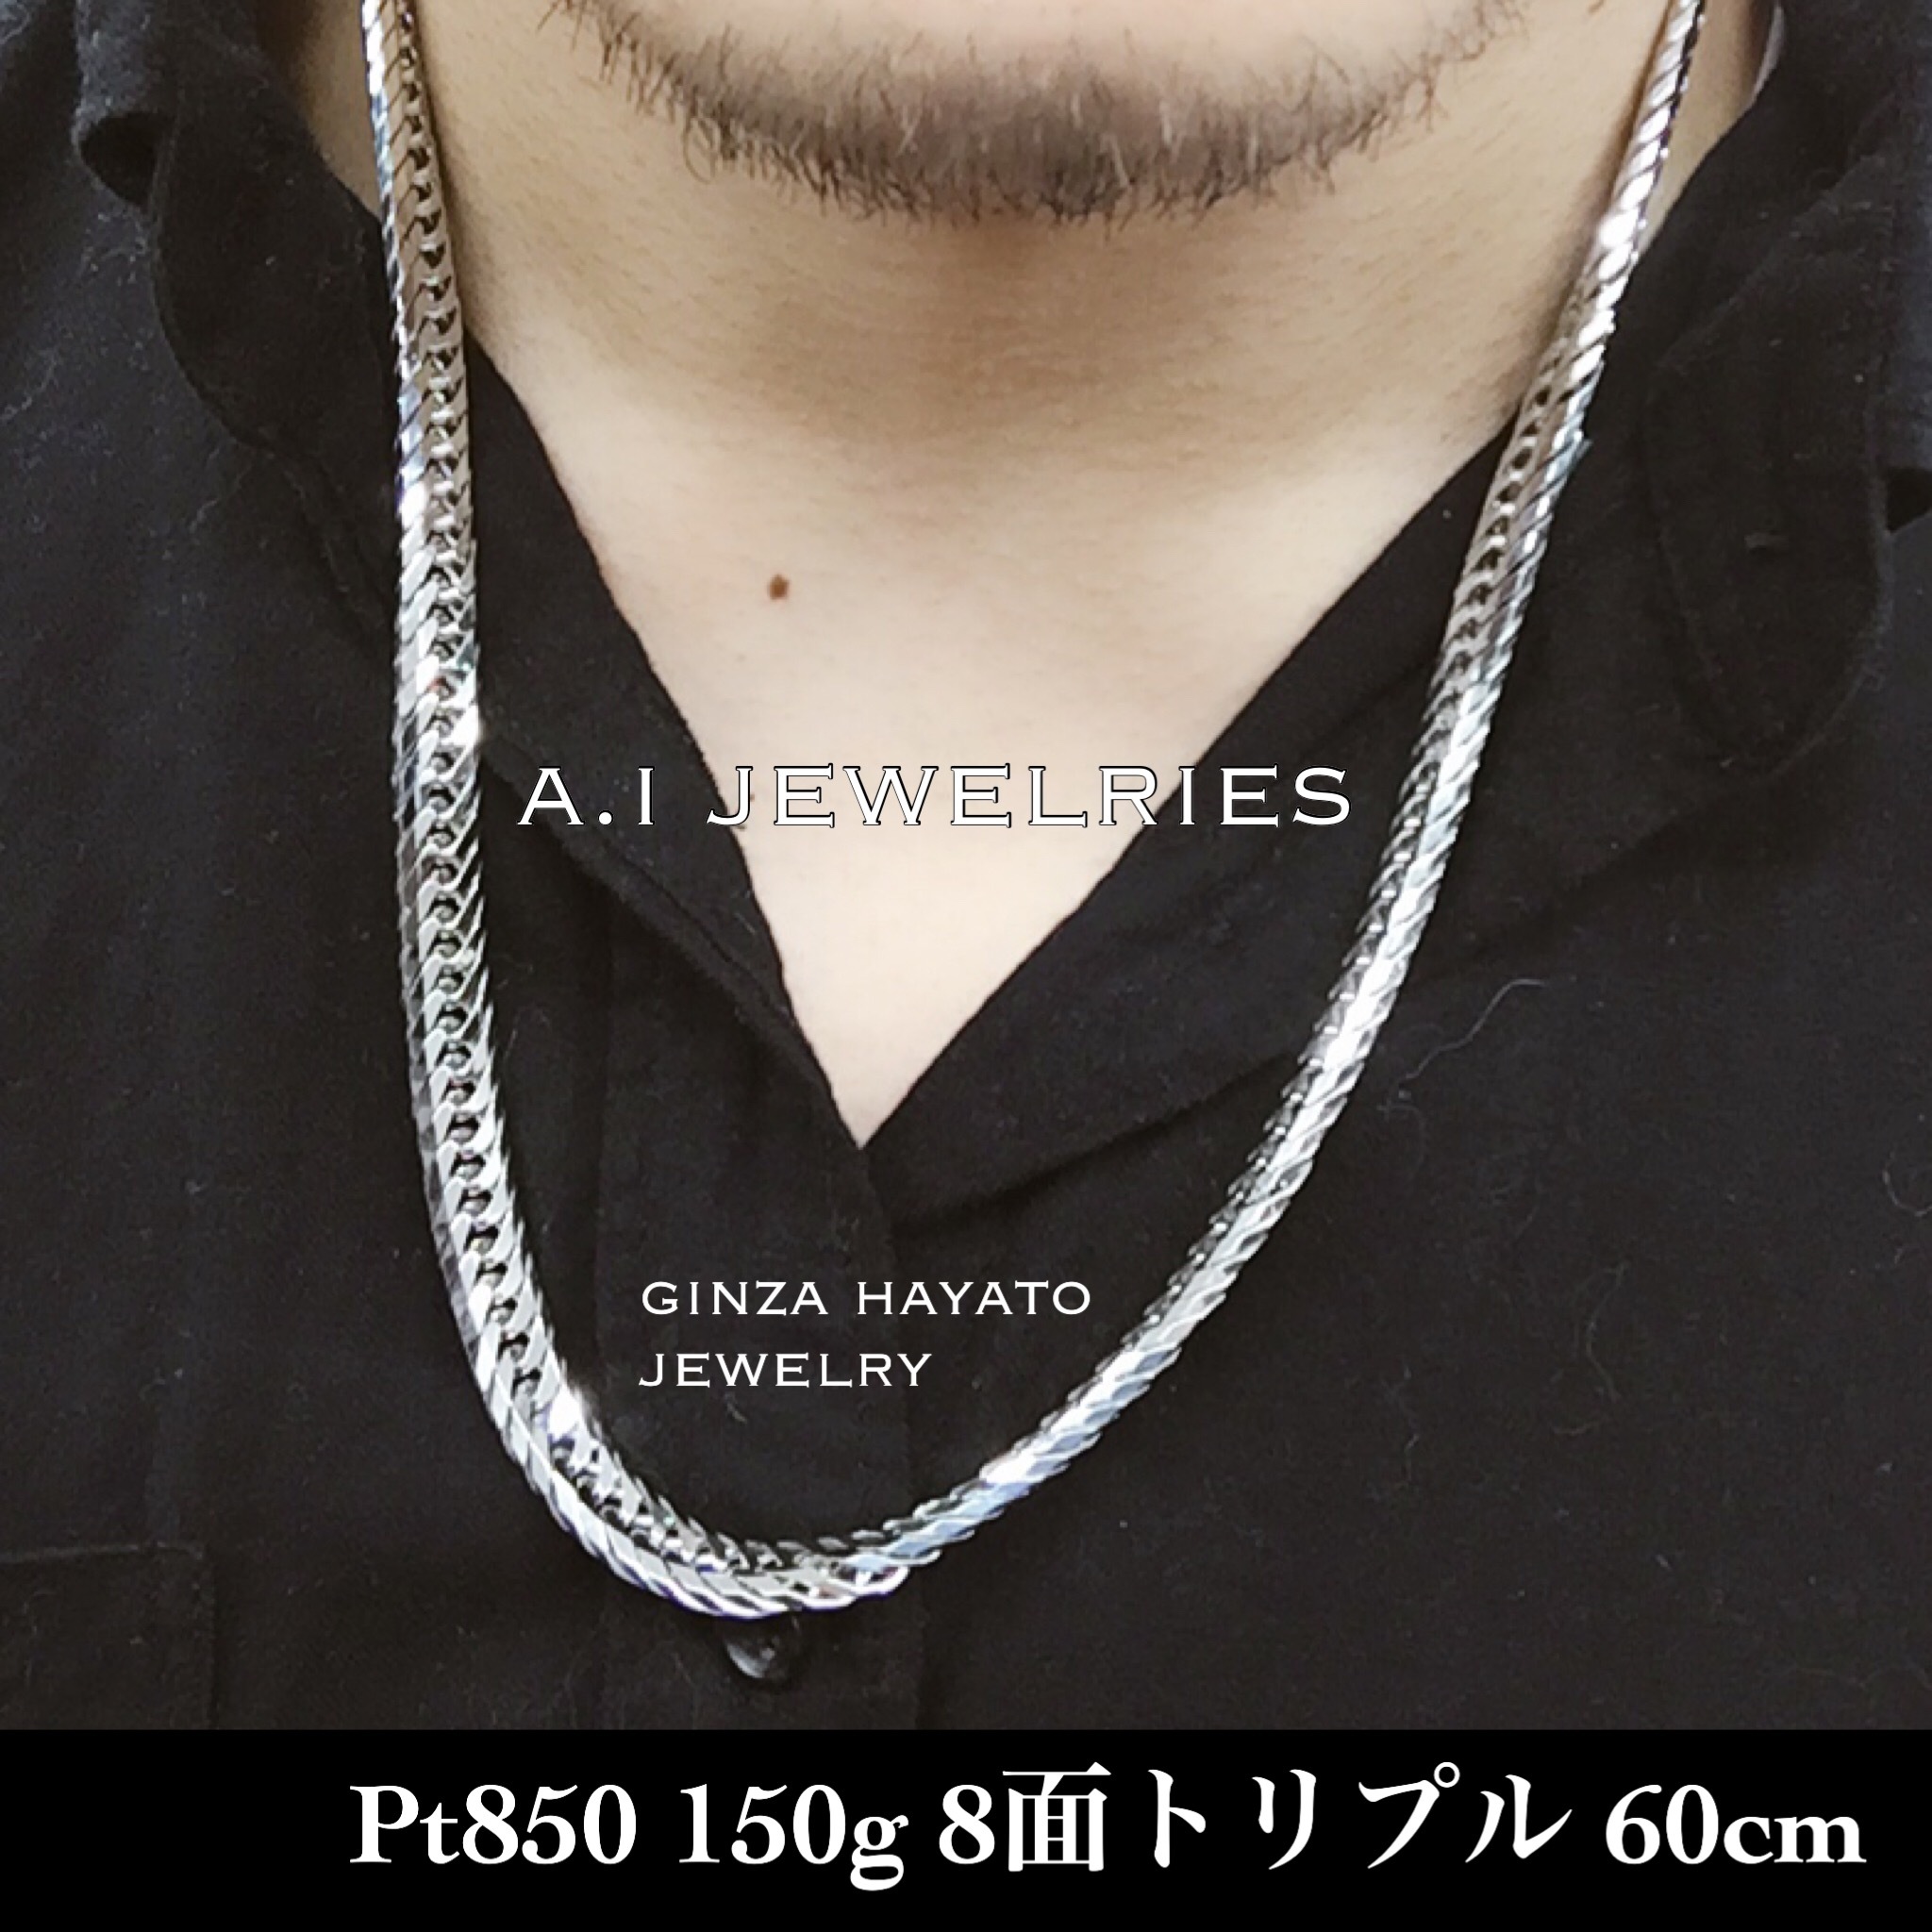 Pt850 プラチナ850 150g 8面トリプル 60cm 喜平 資産 ネックレス メンズ A I Jewelries エイアイジュエリーズ